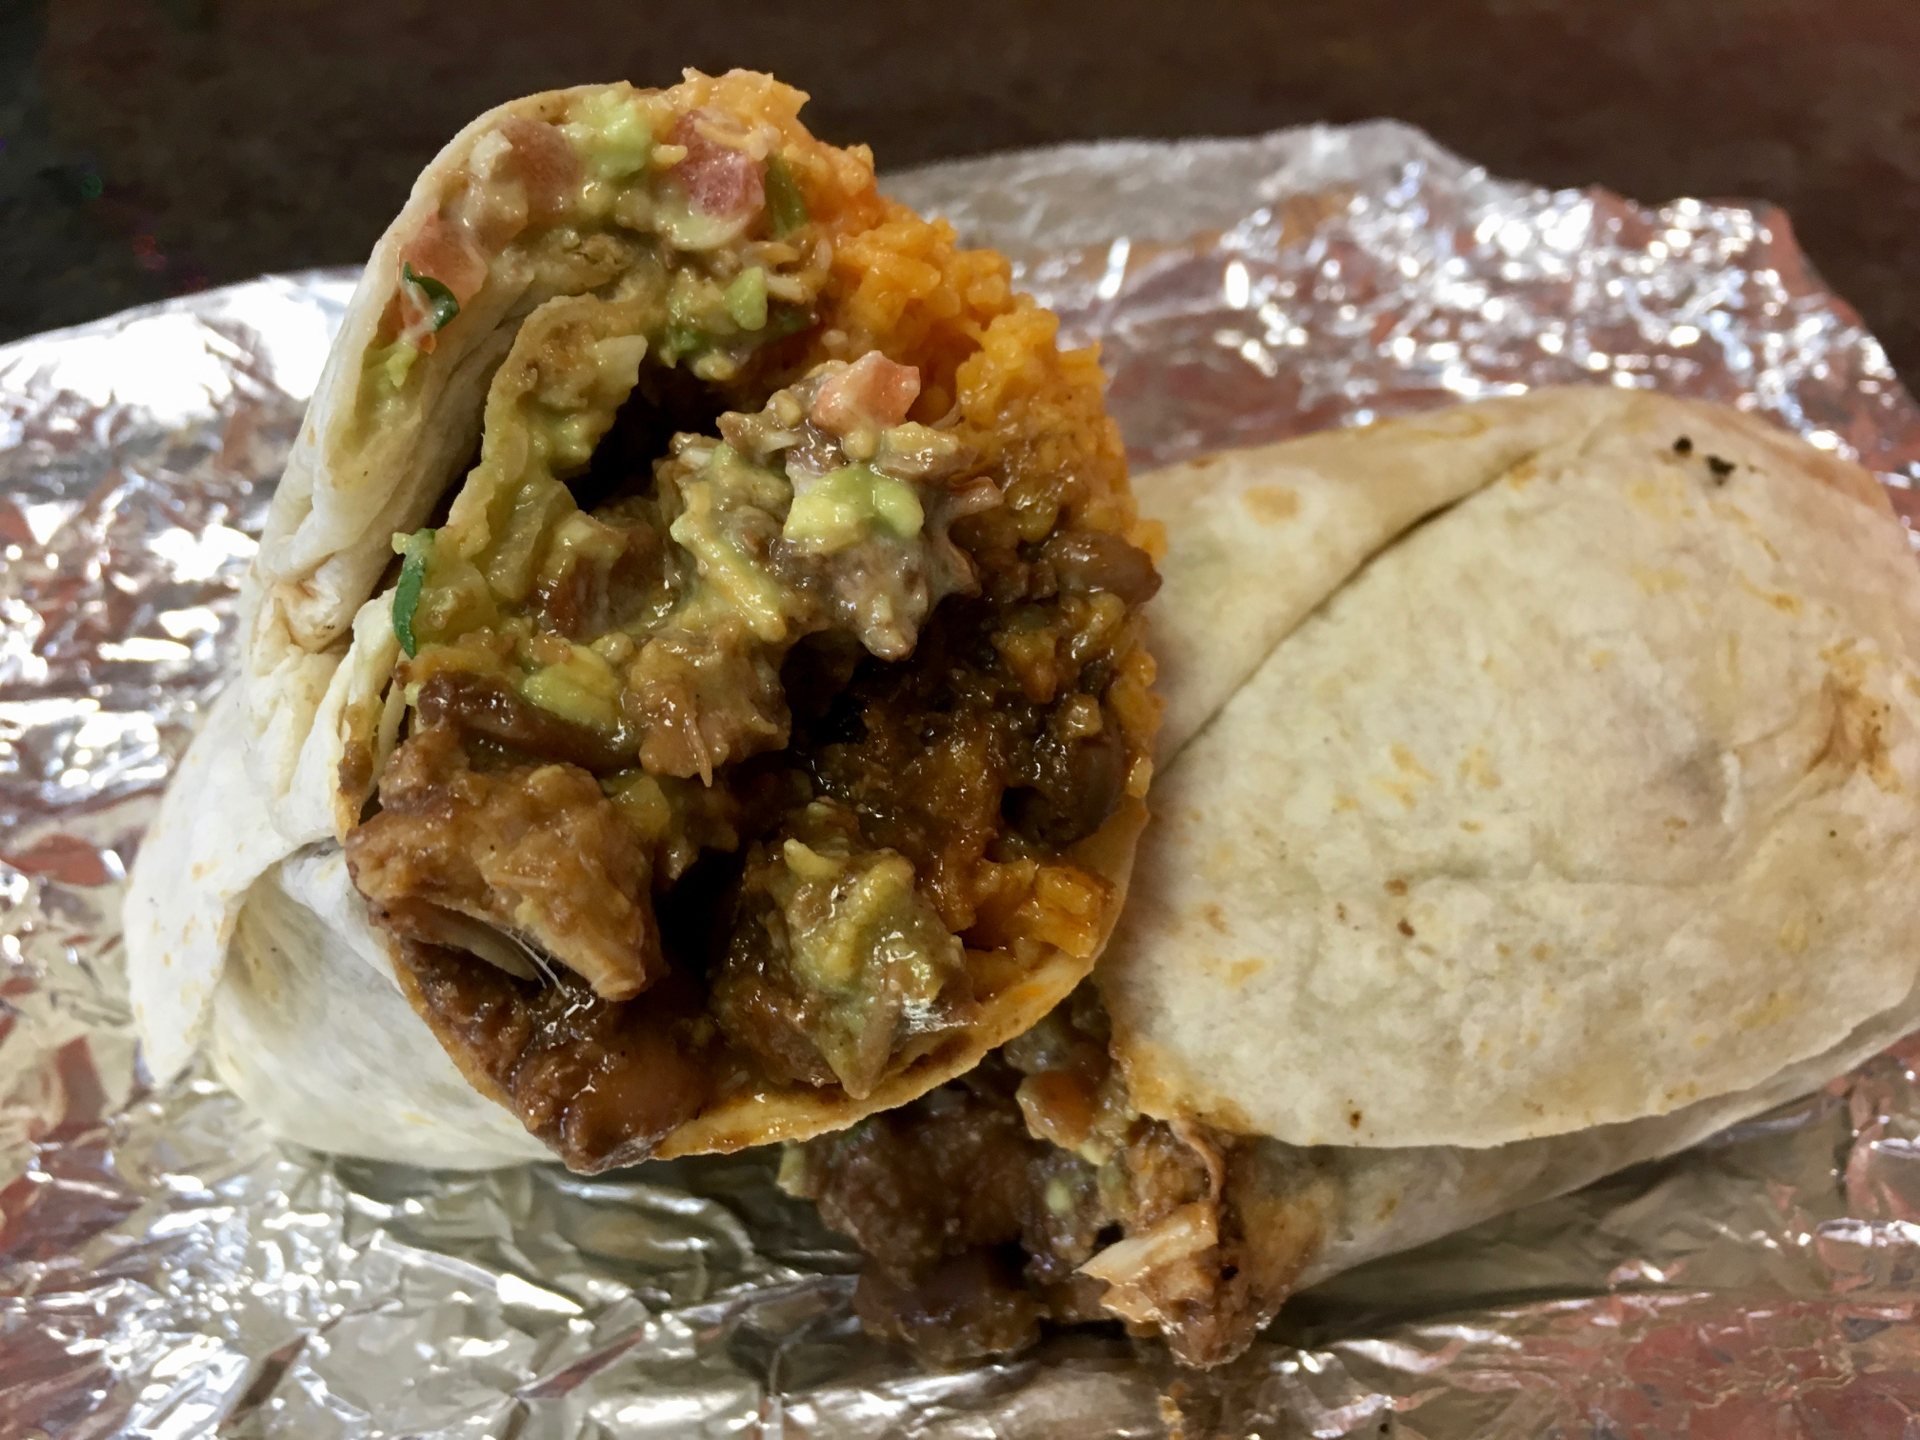 A chicken mole burrito at La Costena Mexican Grill.